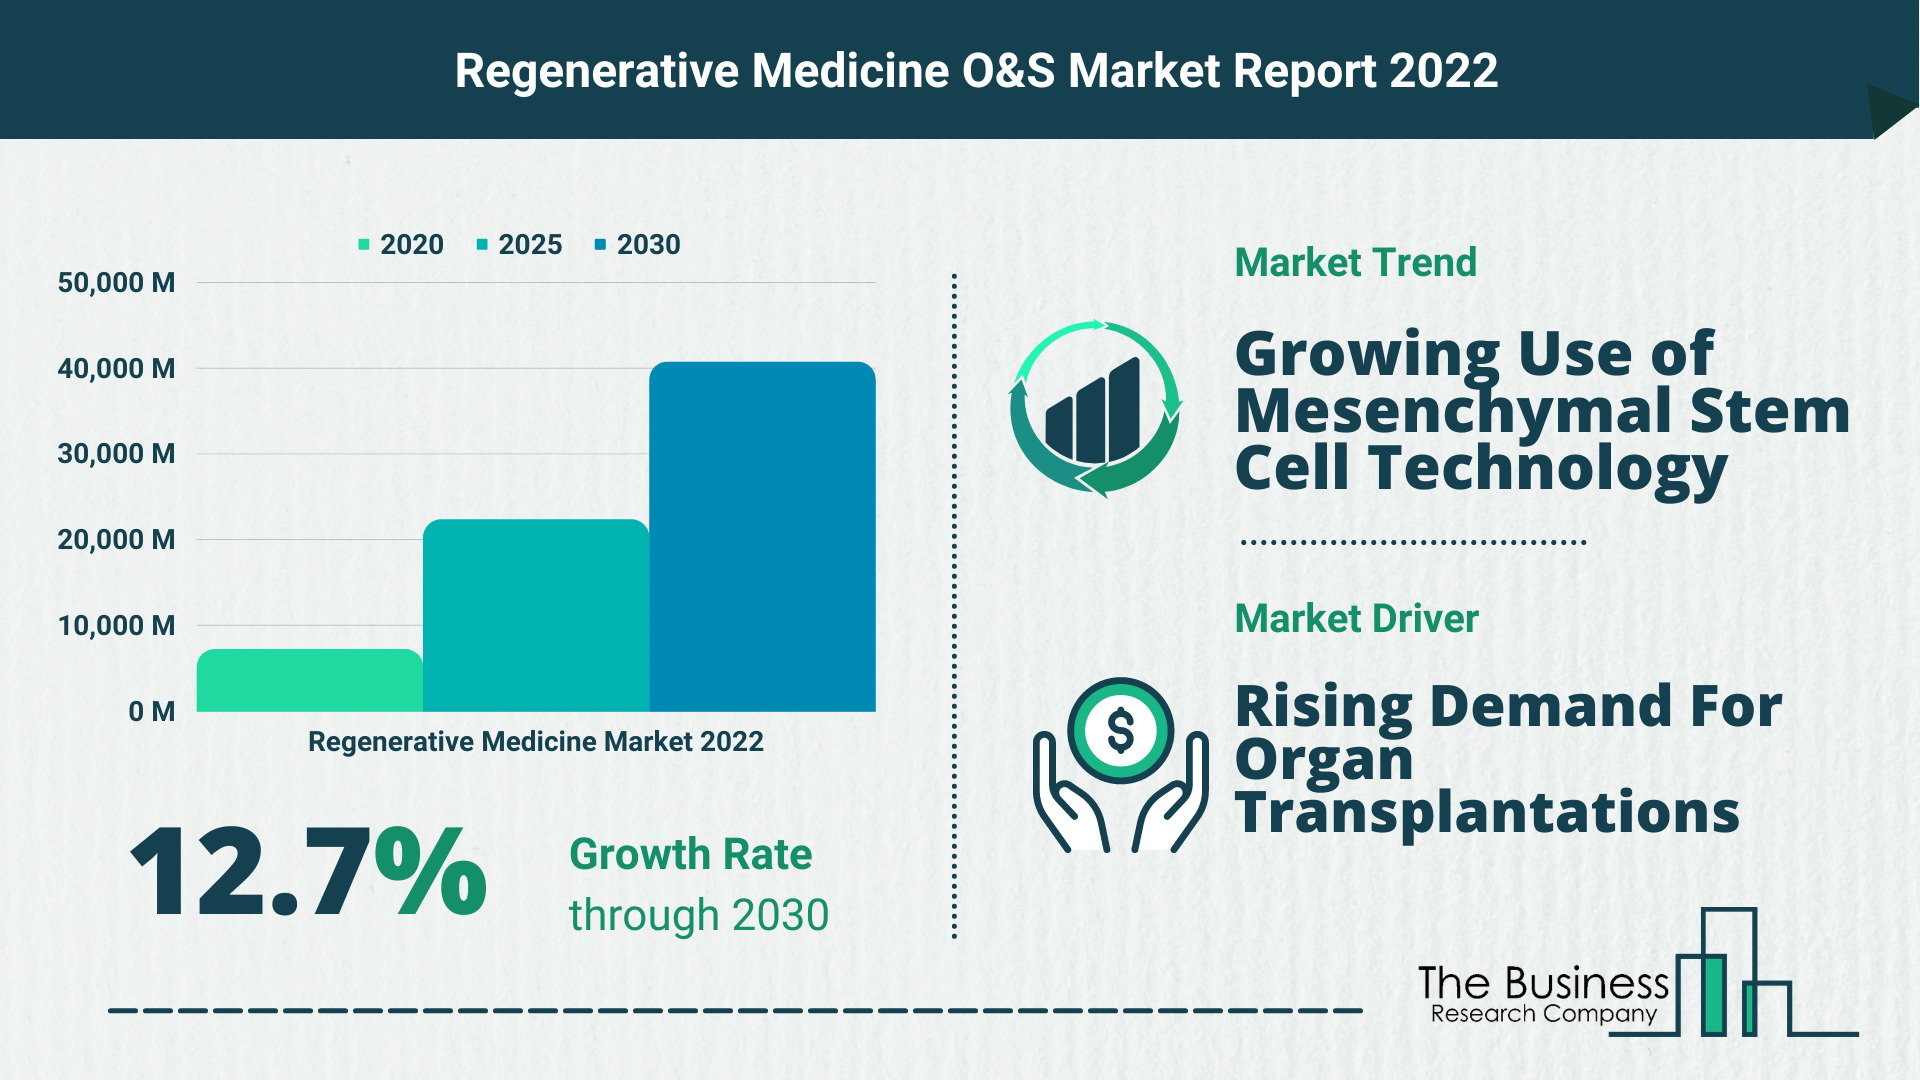 Global Regenerative Medicine Market 2022 – Market Opportunities And Strategies